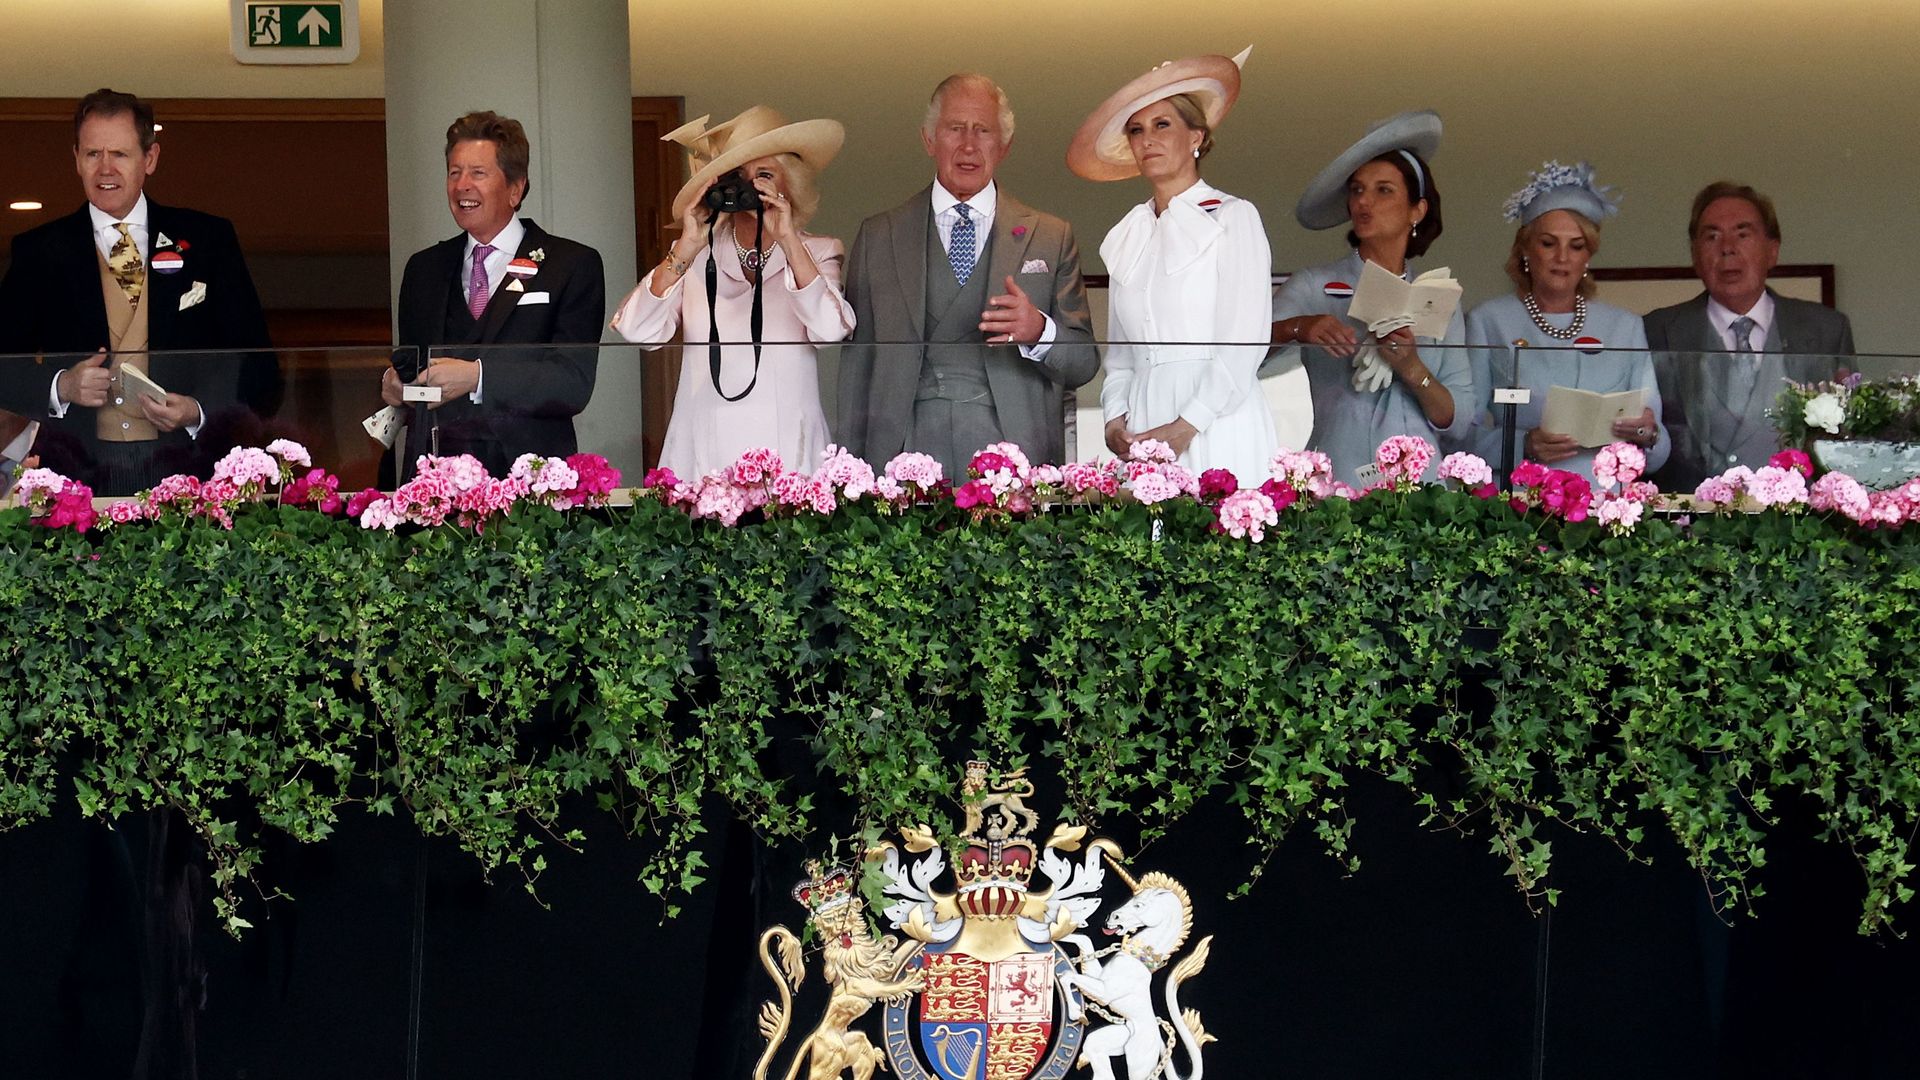 The royal family in the royal box at Royal Ascot